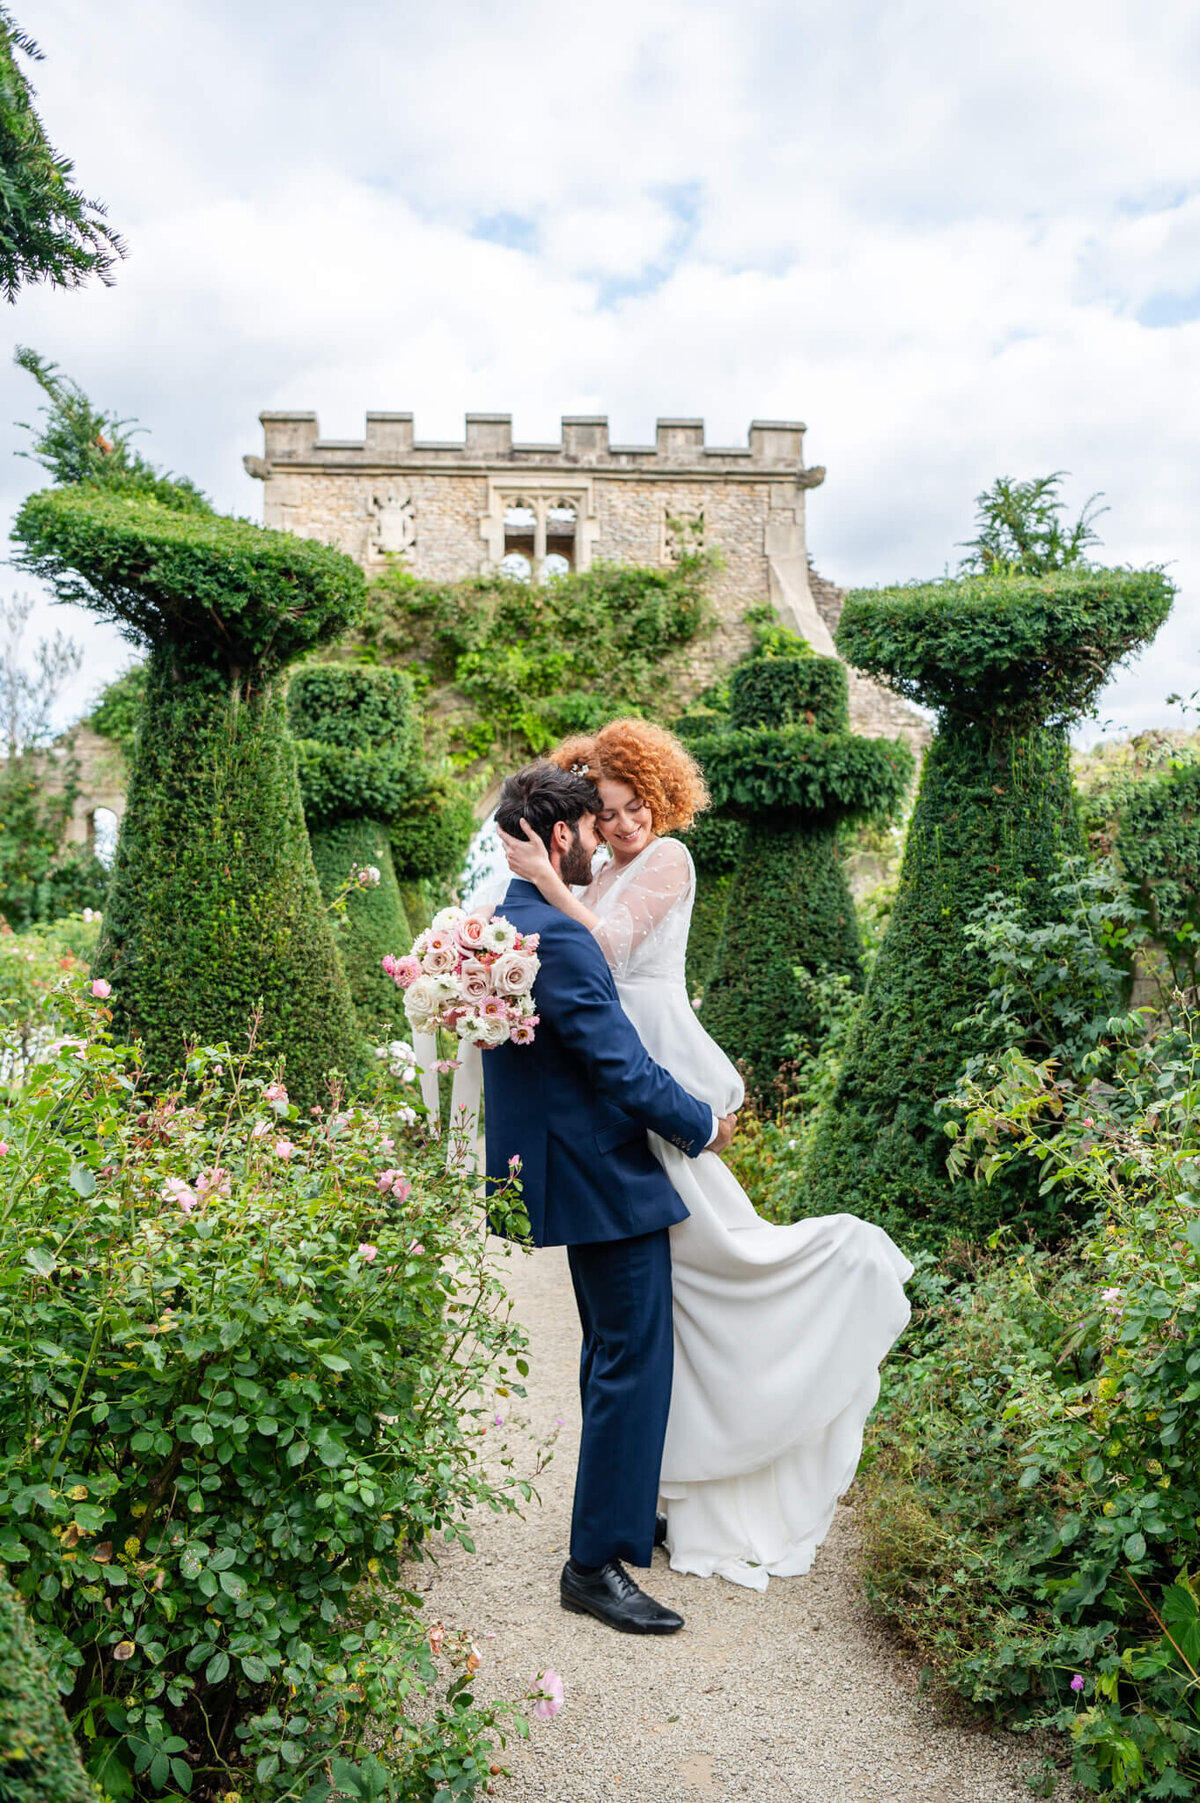 Euridge Manor Wedding Photographer - Luxury UK Wedding Photographer - Chloe Bolam -422